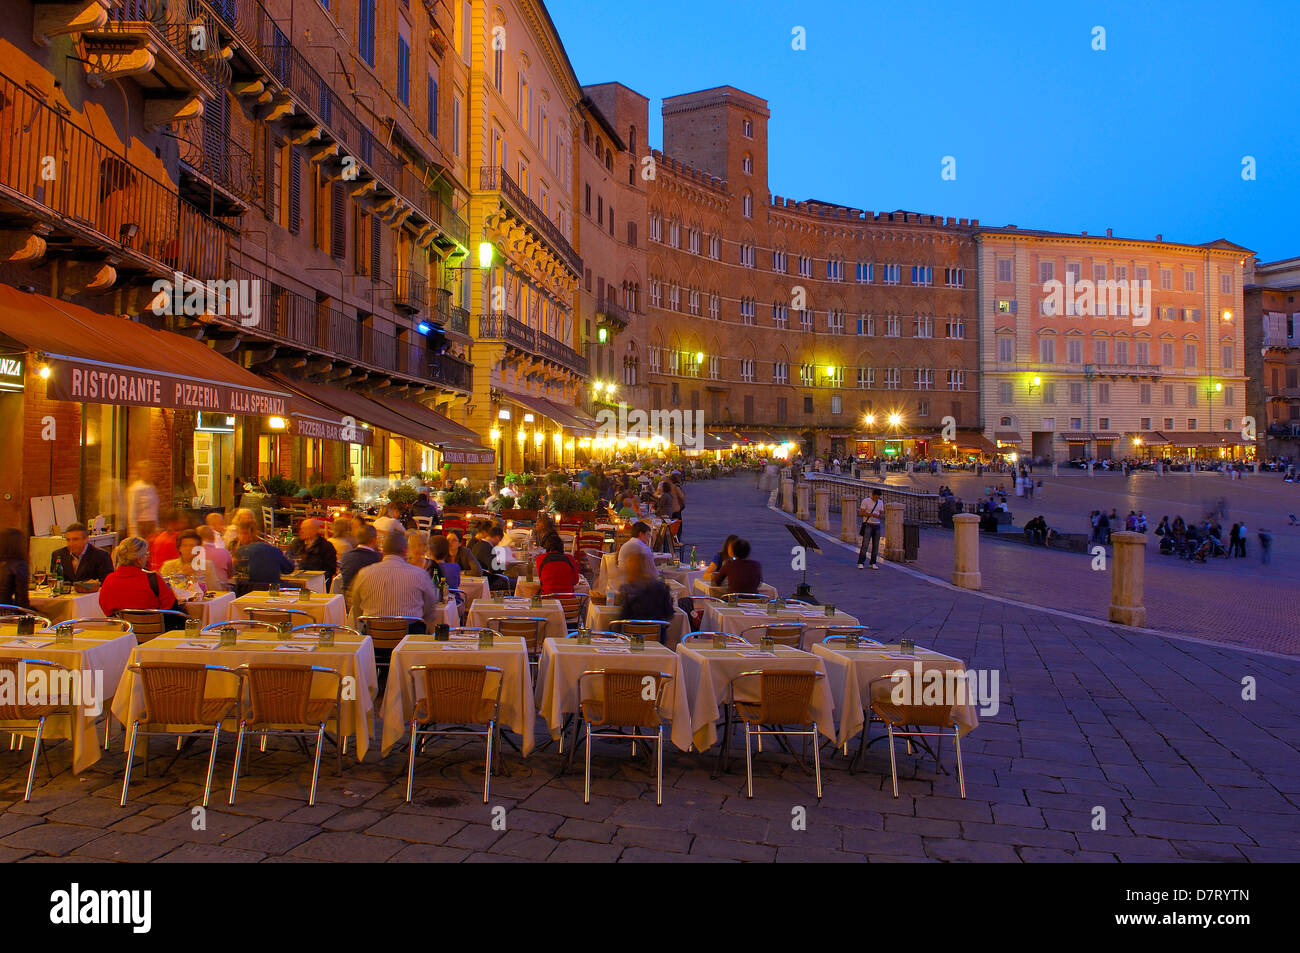 Siena, Piazza del campo at Dusk, The Campo Square at Dusk,Tuscany, Italy, Stock Photo